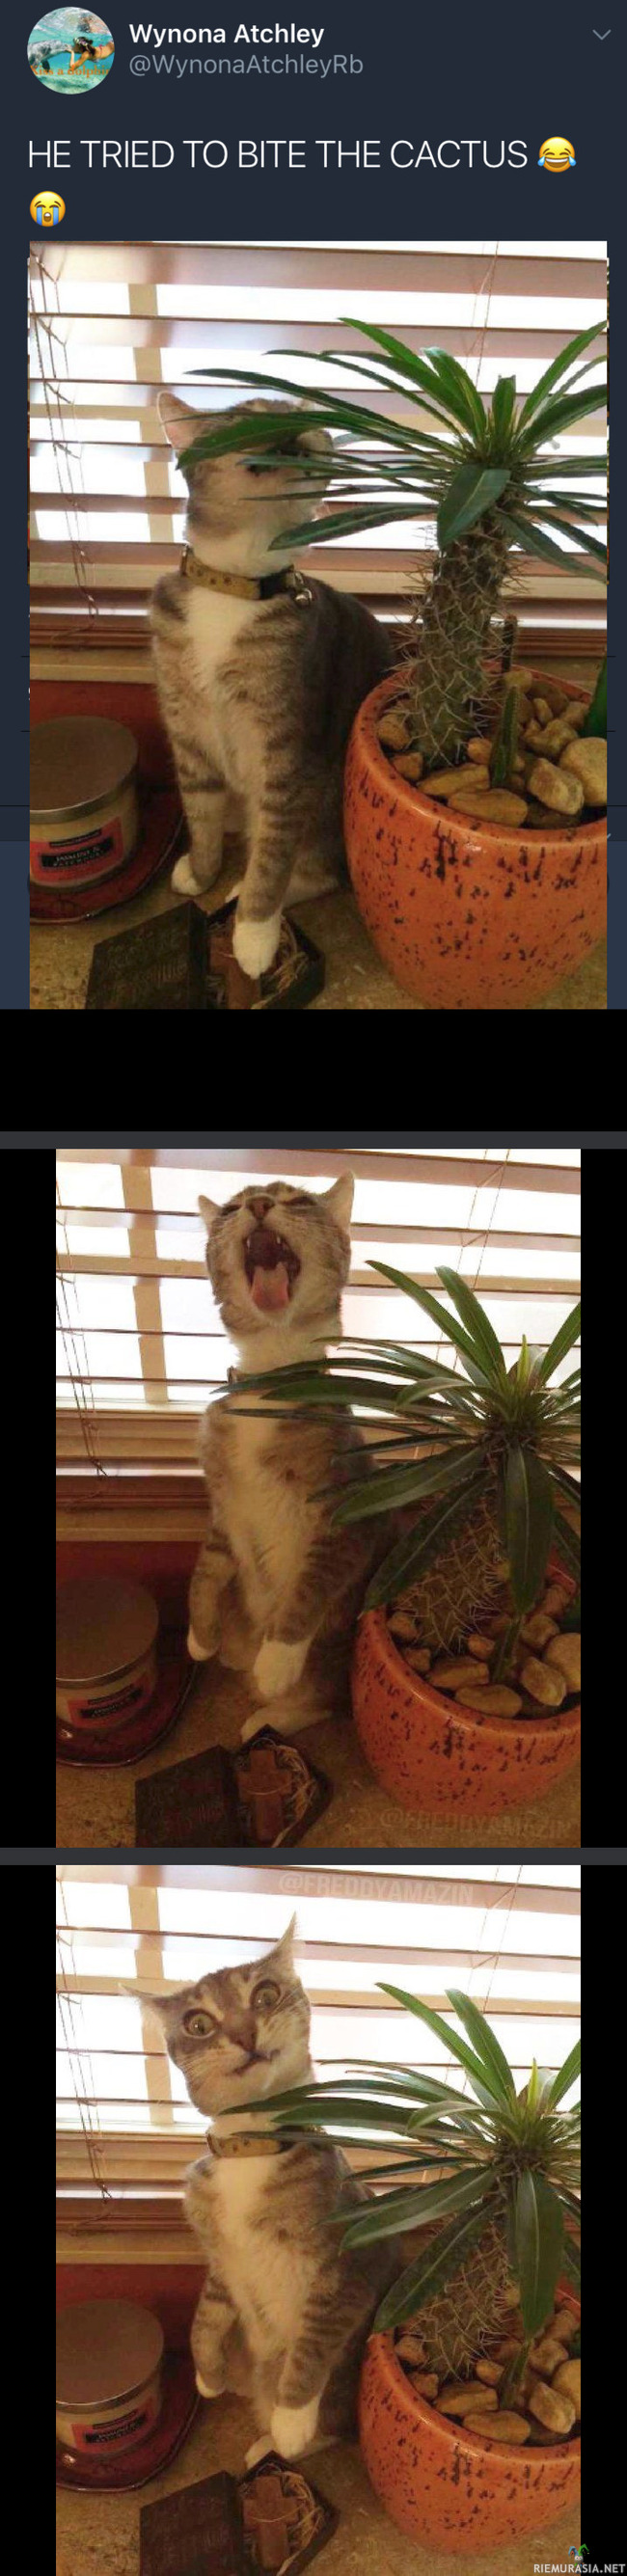 Kissa puraisee kaktusta - Kannattiko